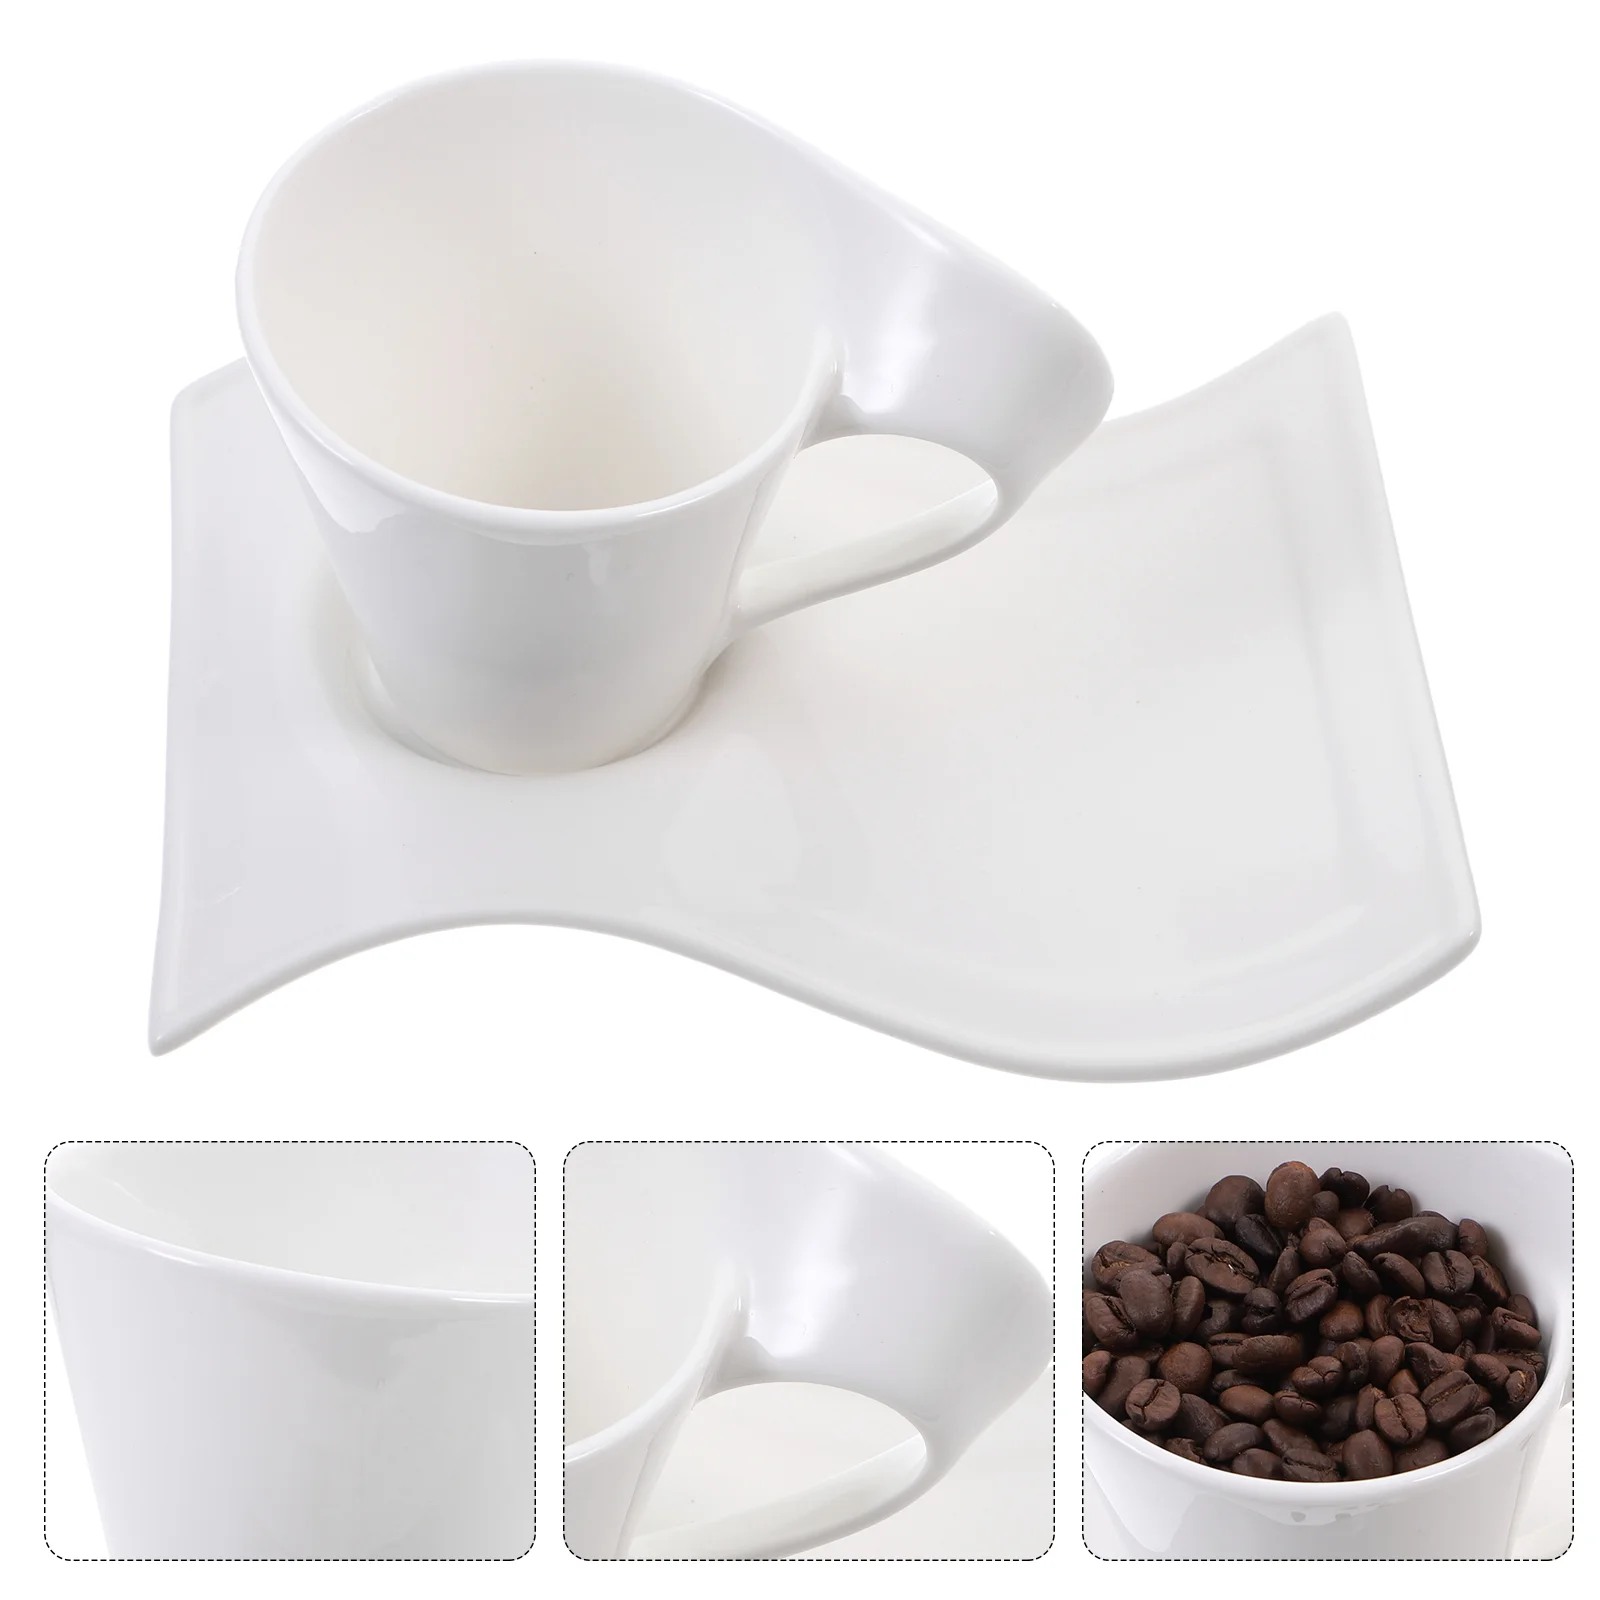 

Cup Ceramic Mug Coffee Tea Cups Saucer Cappuccino Wave Porcelain Set New Espresso Latte Caffe Mugs Cafe Saucers White China